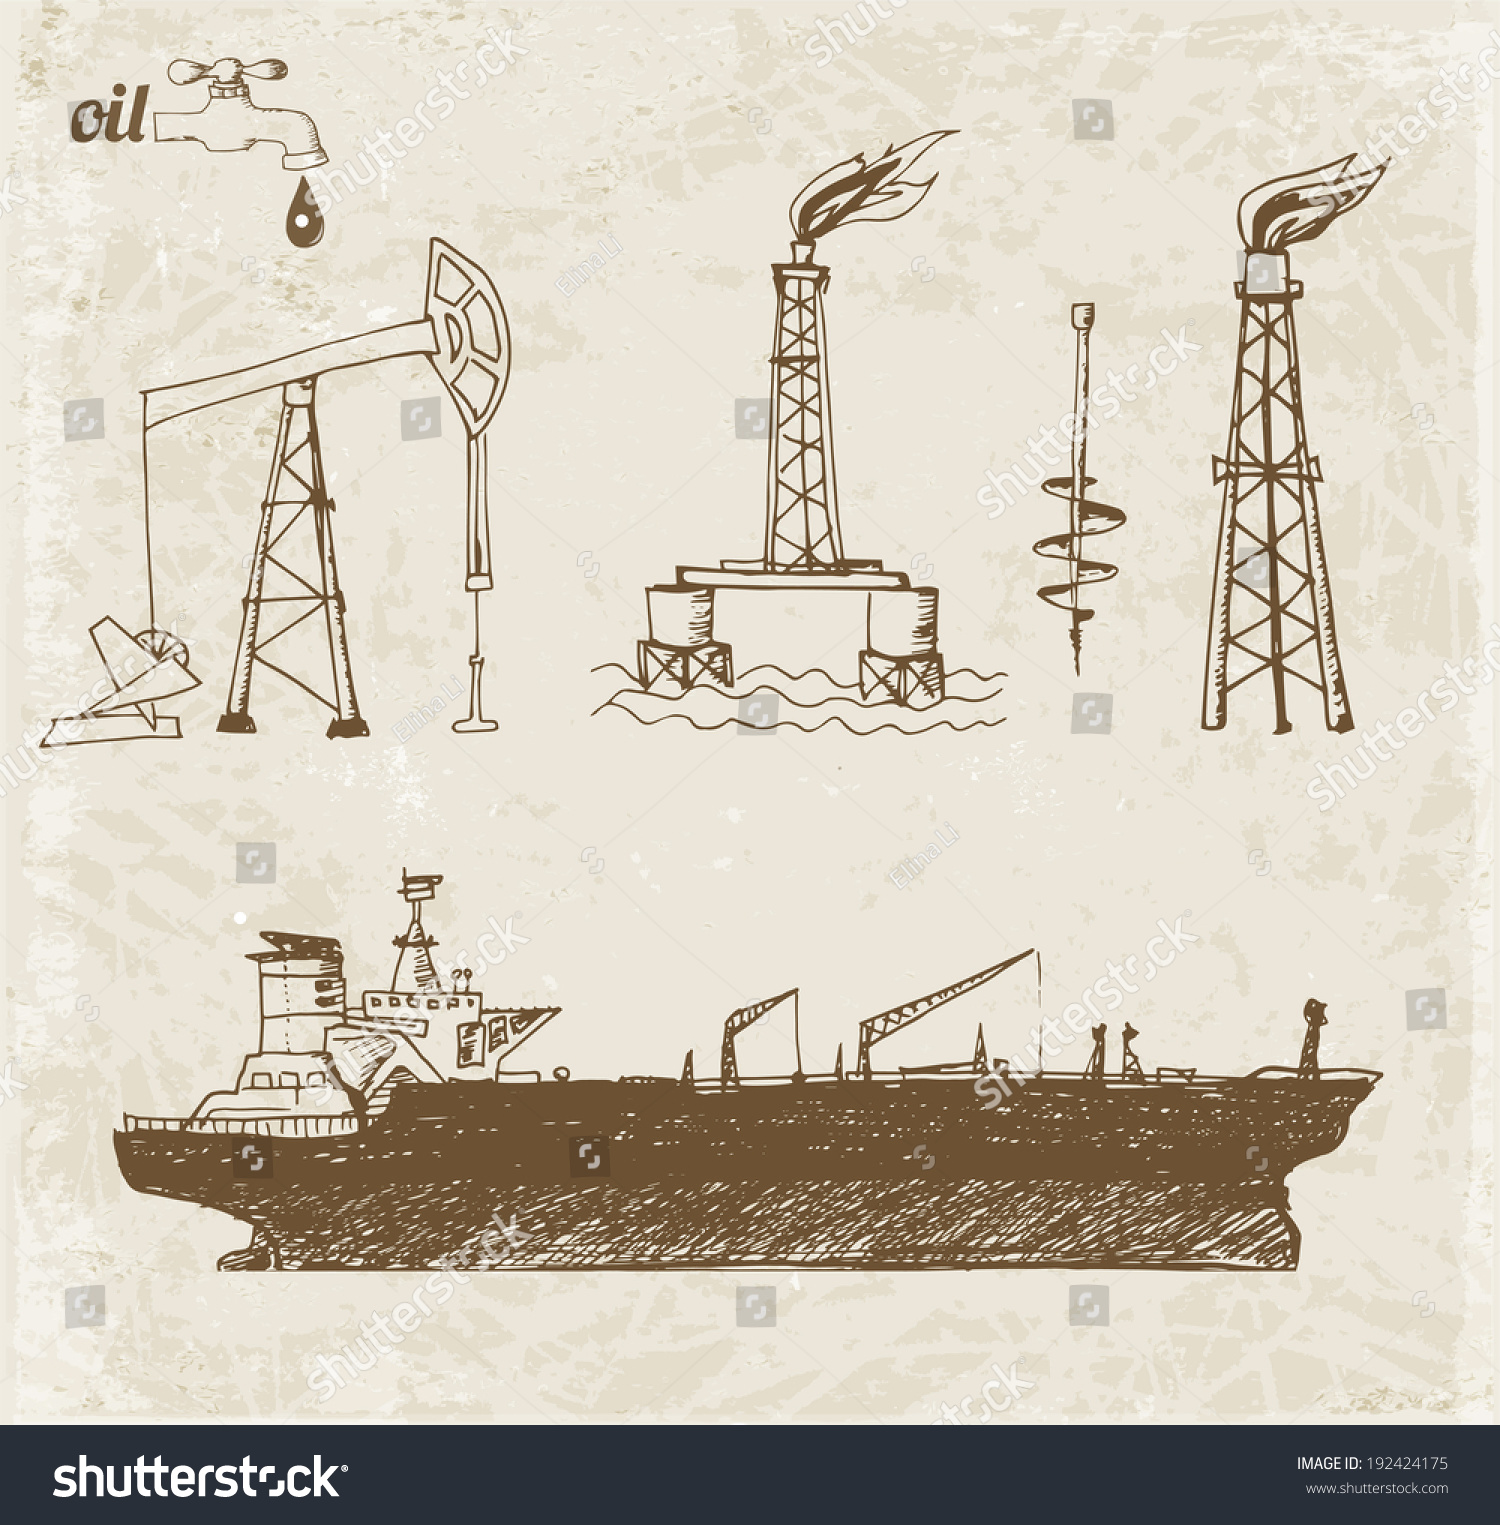 Нефтяной танкер рисунок